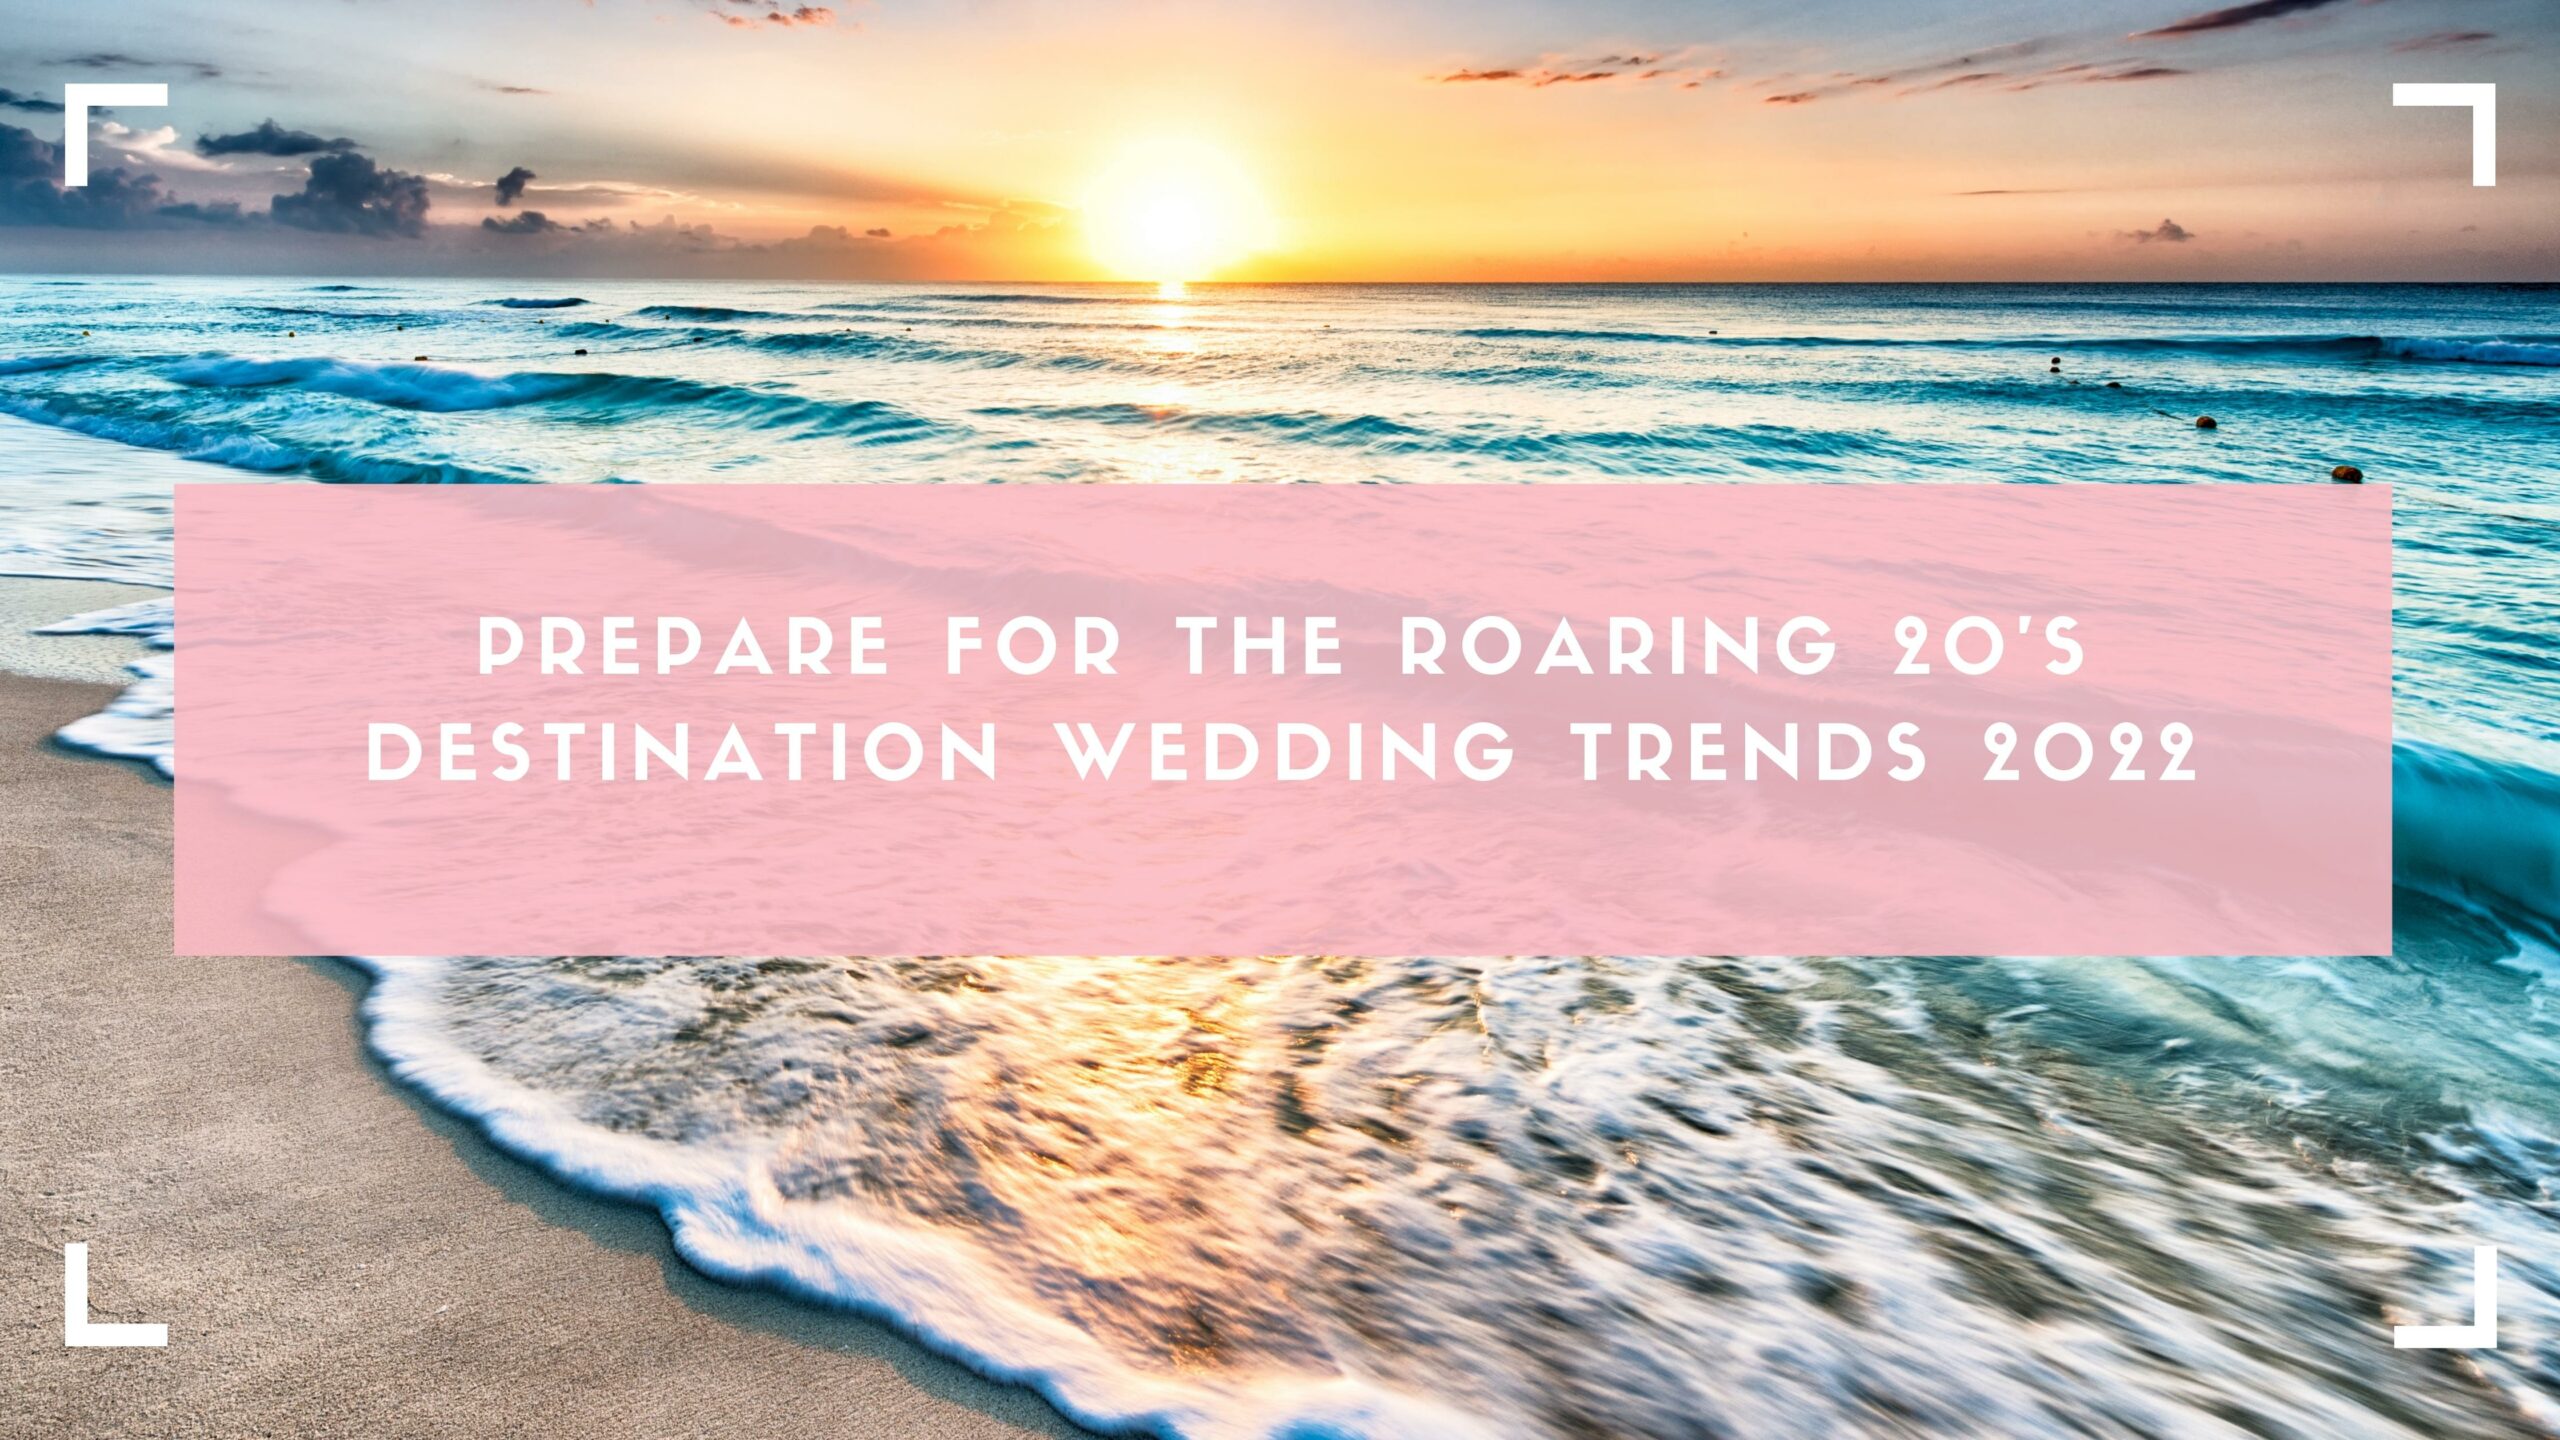 Destination wedding trends 2022 blog header